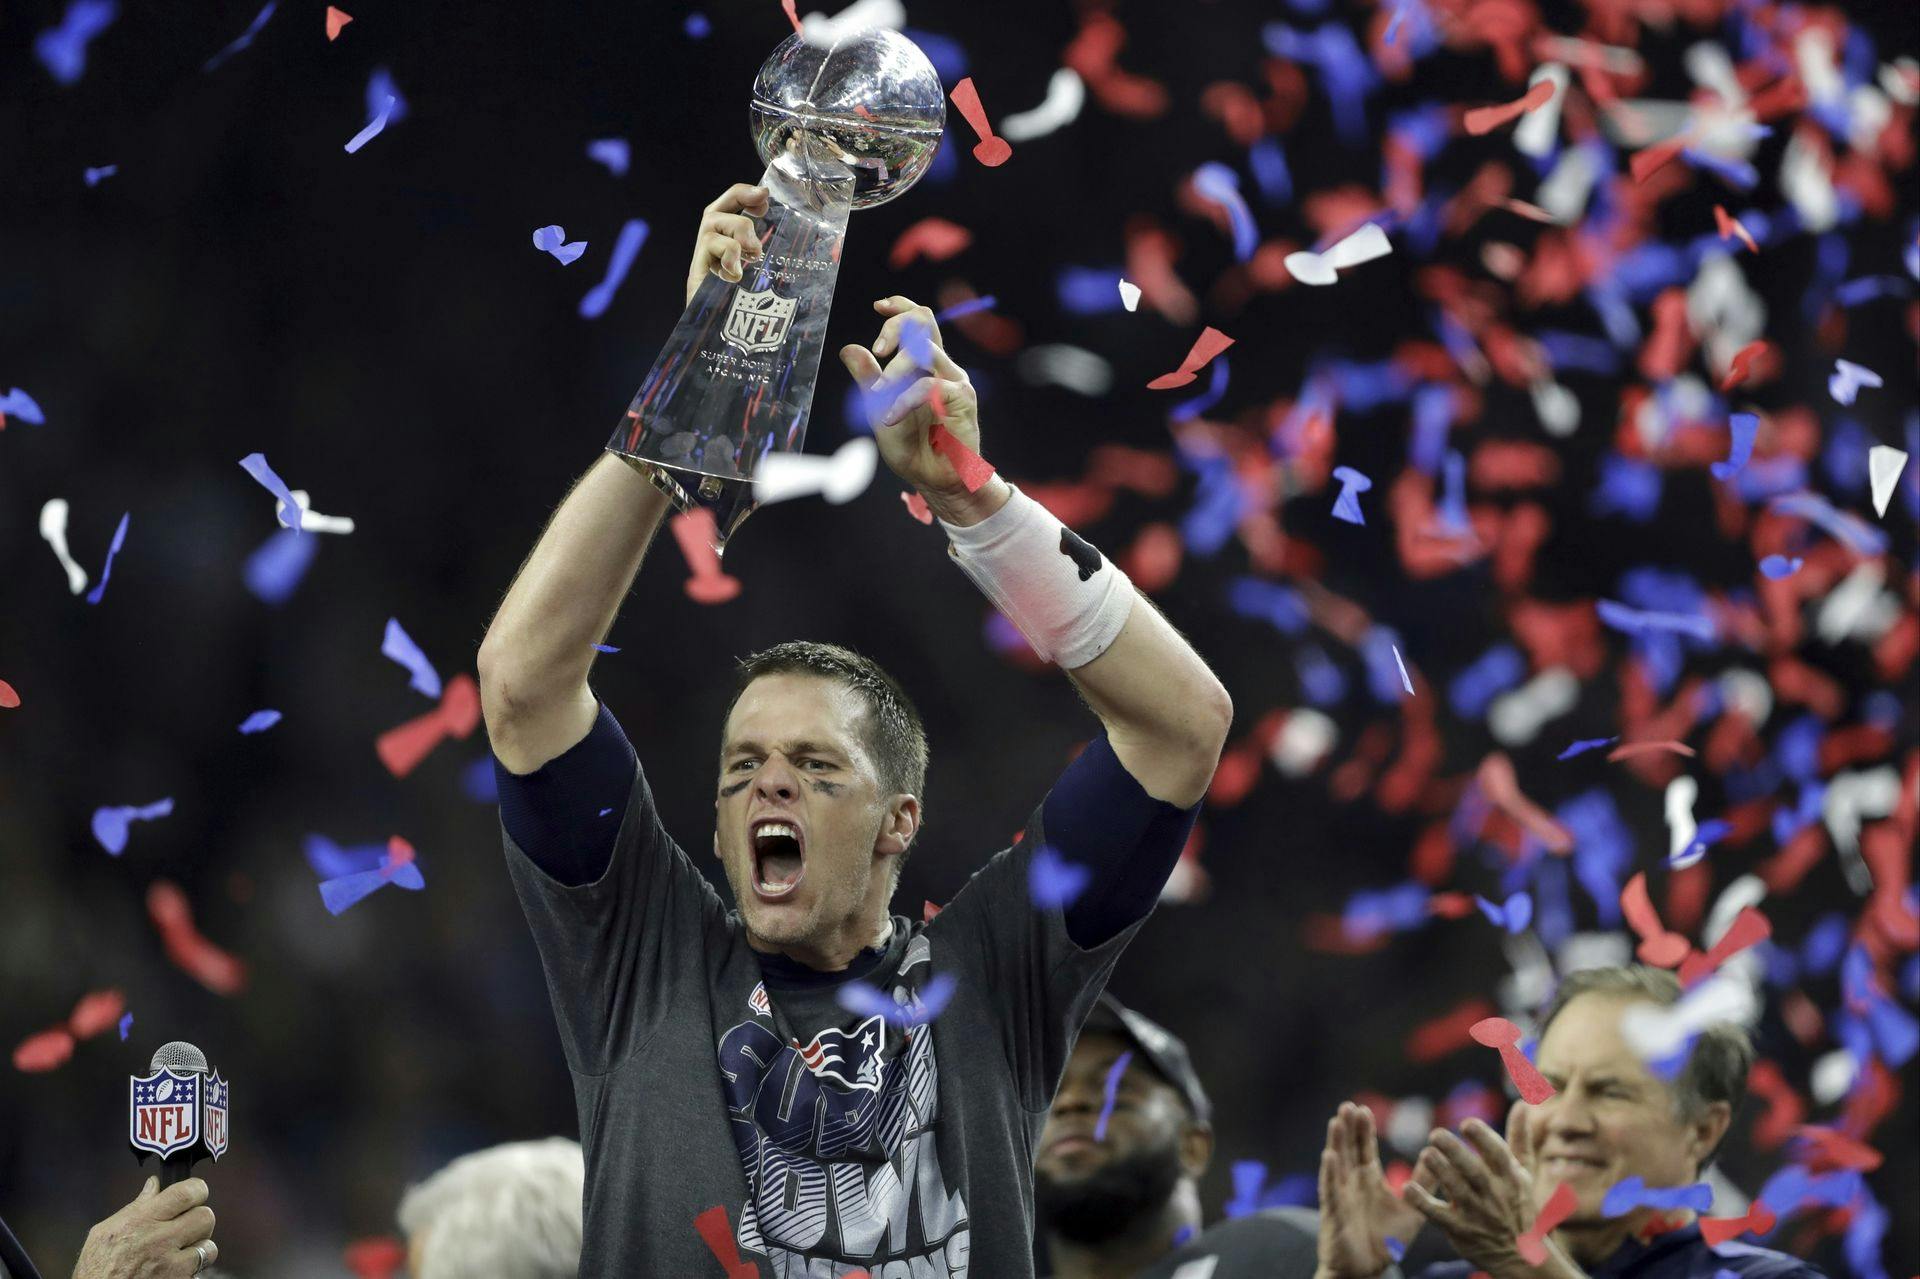 45-årige Tom Brady vandt syv Super Bowl-titler i sin karriere, og han regnes af de fleste som sportens største nogensinde. Den karriere kan ende med at gøre en fan næsten 700.000 kroner rigere.